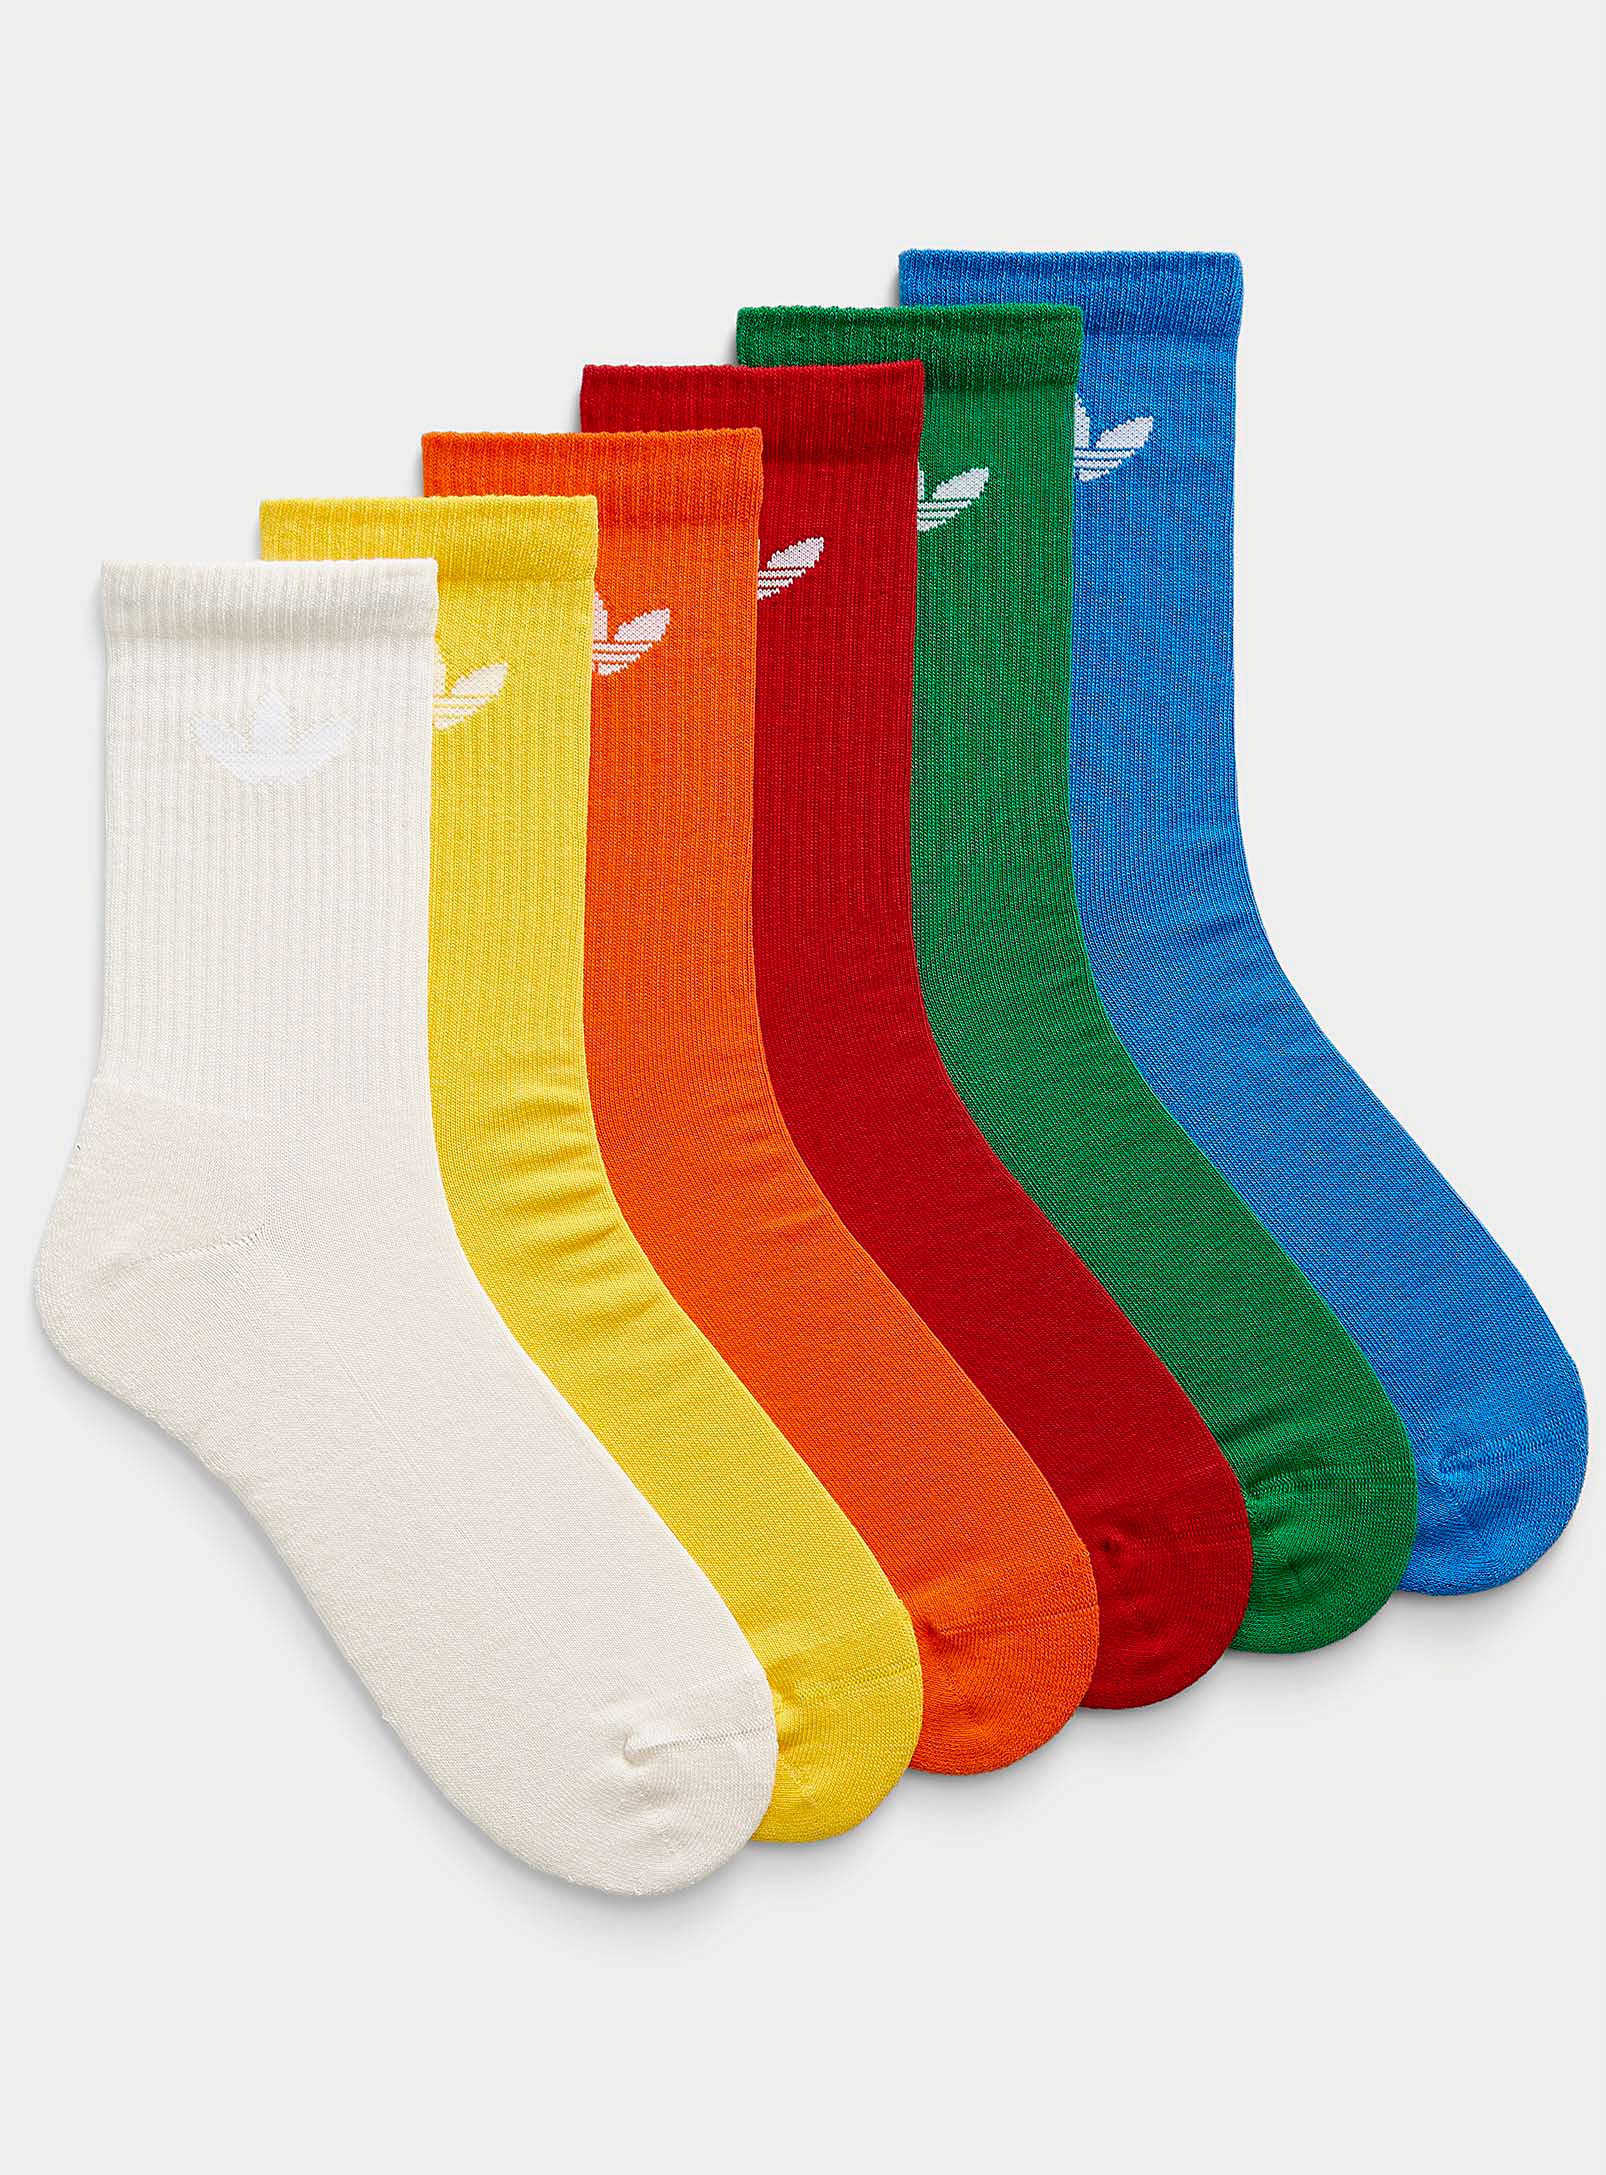 Adidas Originals Colourful Athletic Socks 6-pack In Multi